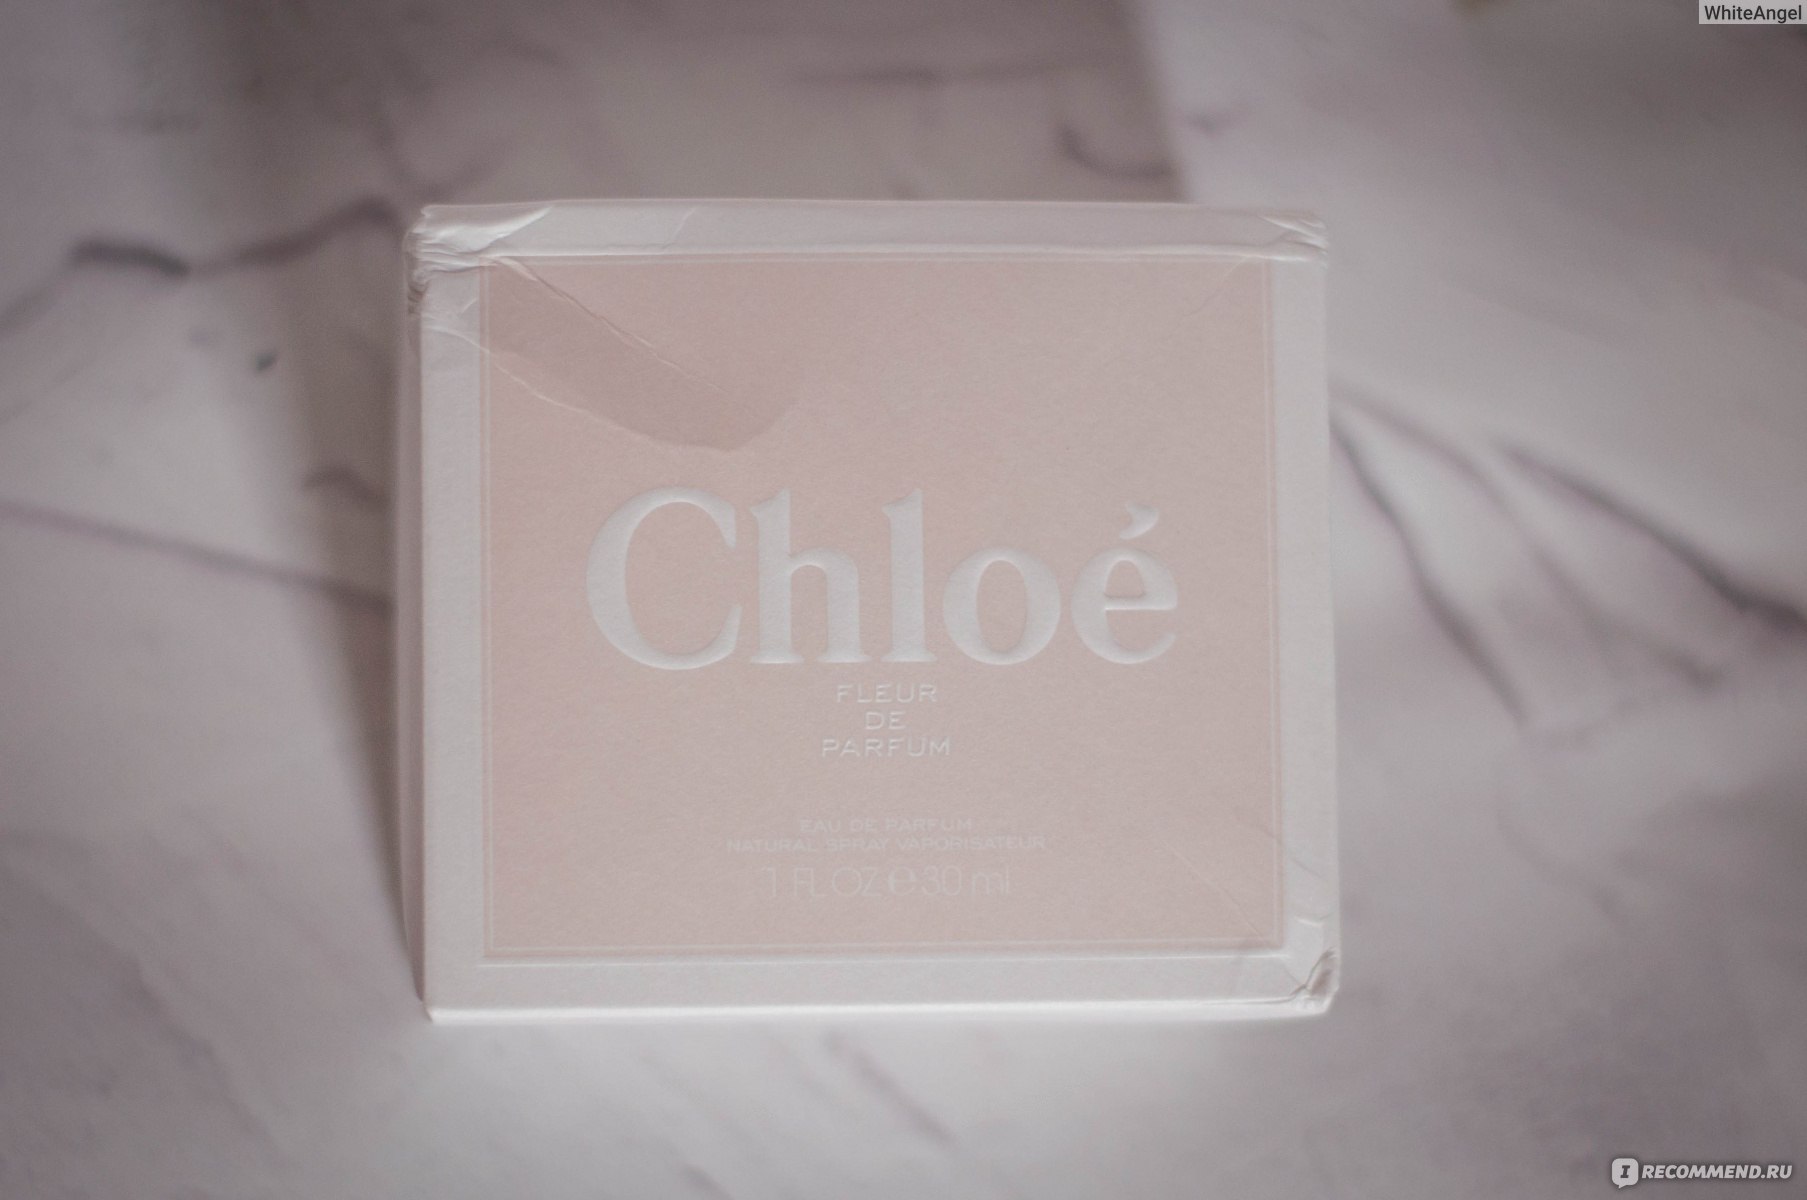 Chloe - White Angel